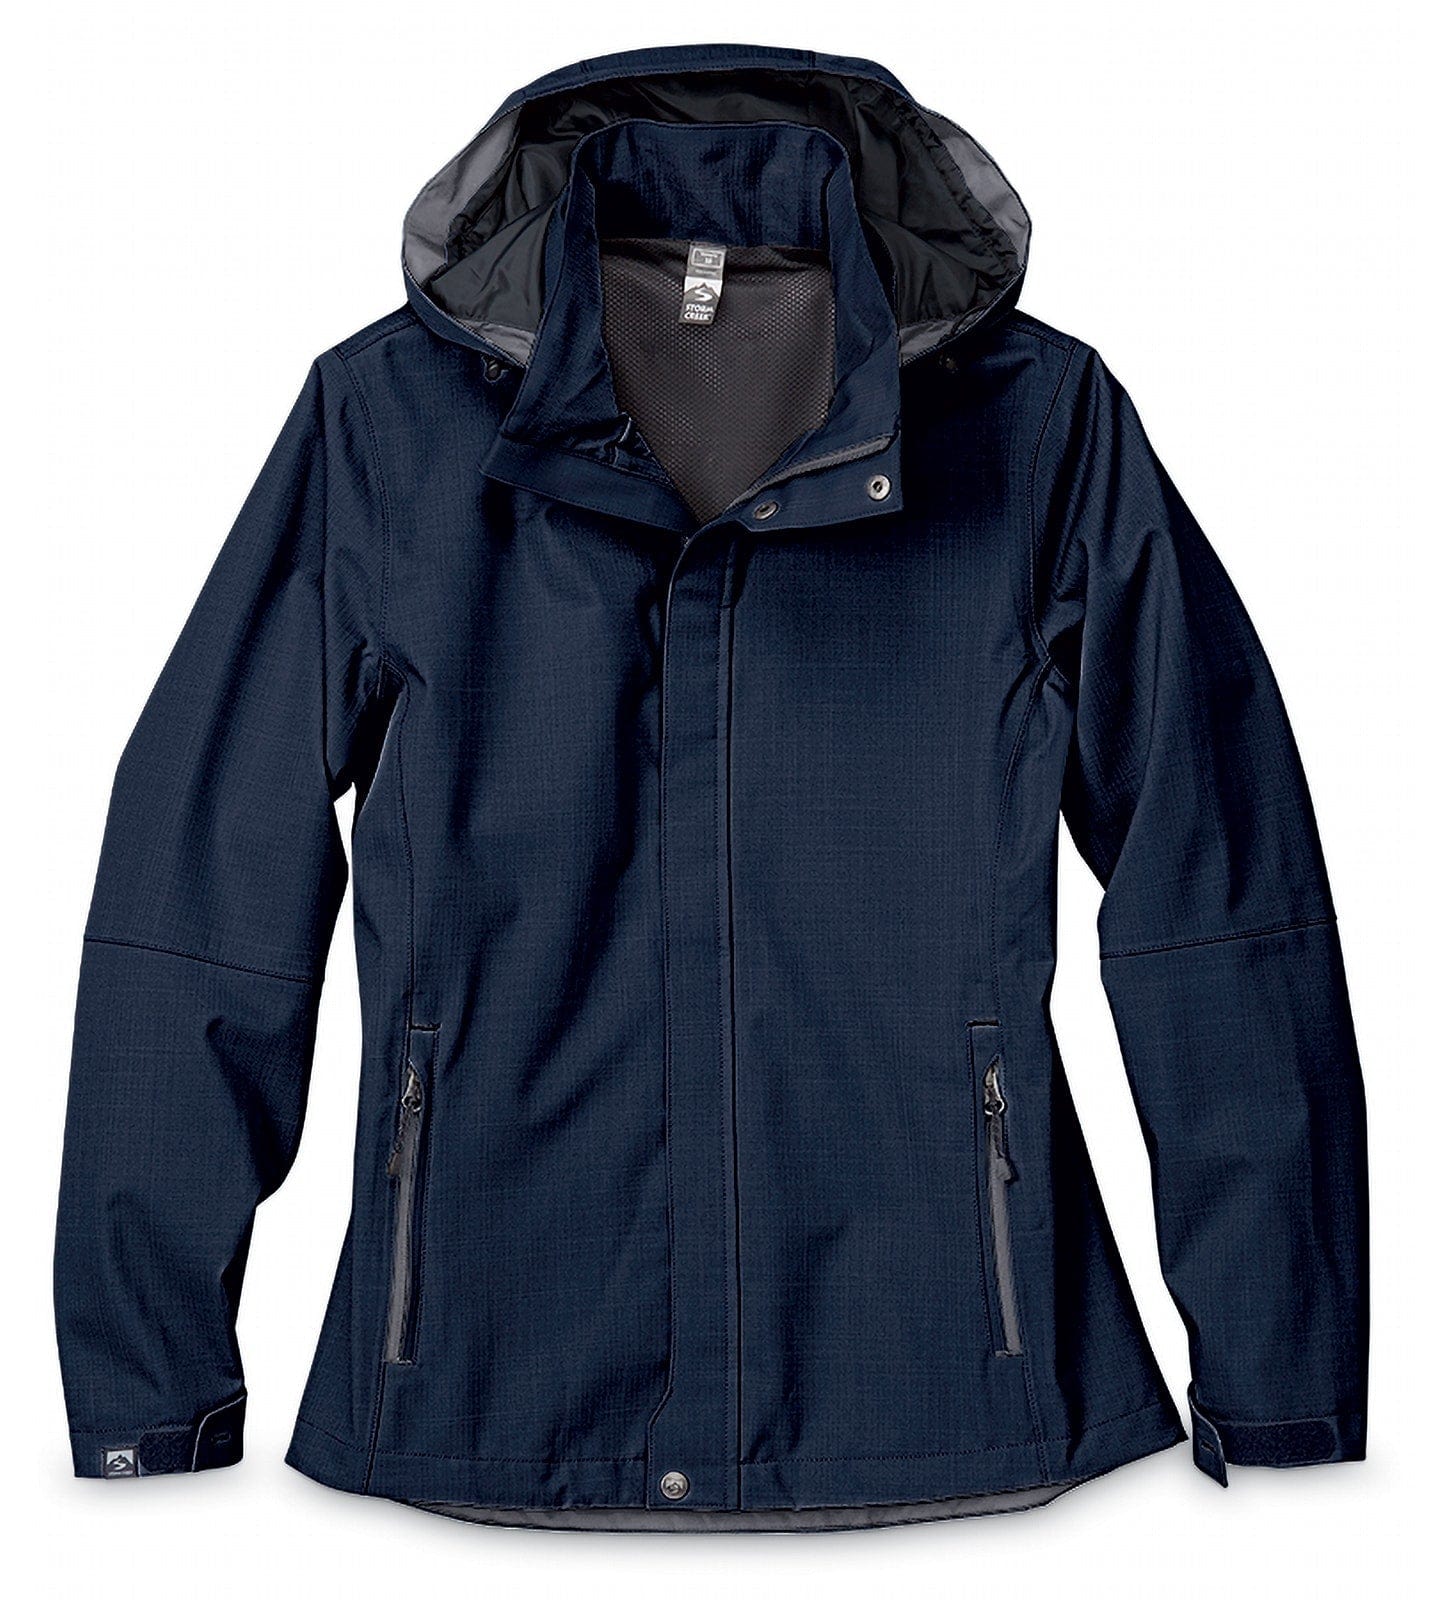 Ladies 3/4 Length Waterproof Jacket with Hood DE - Rydale